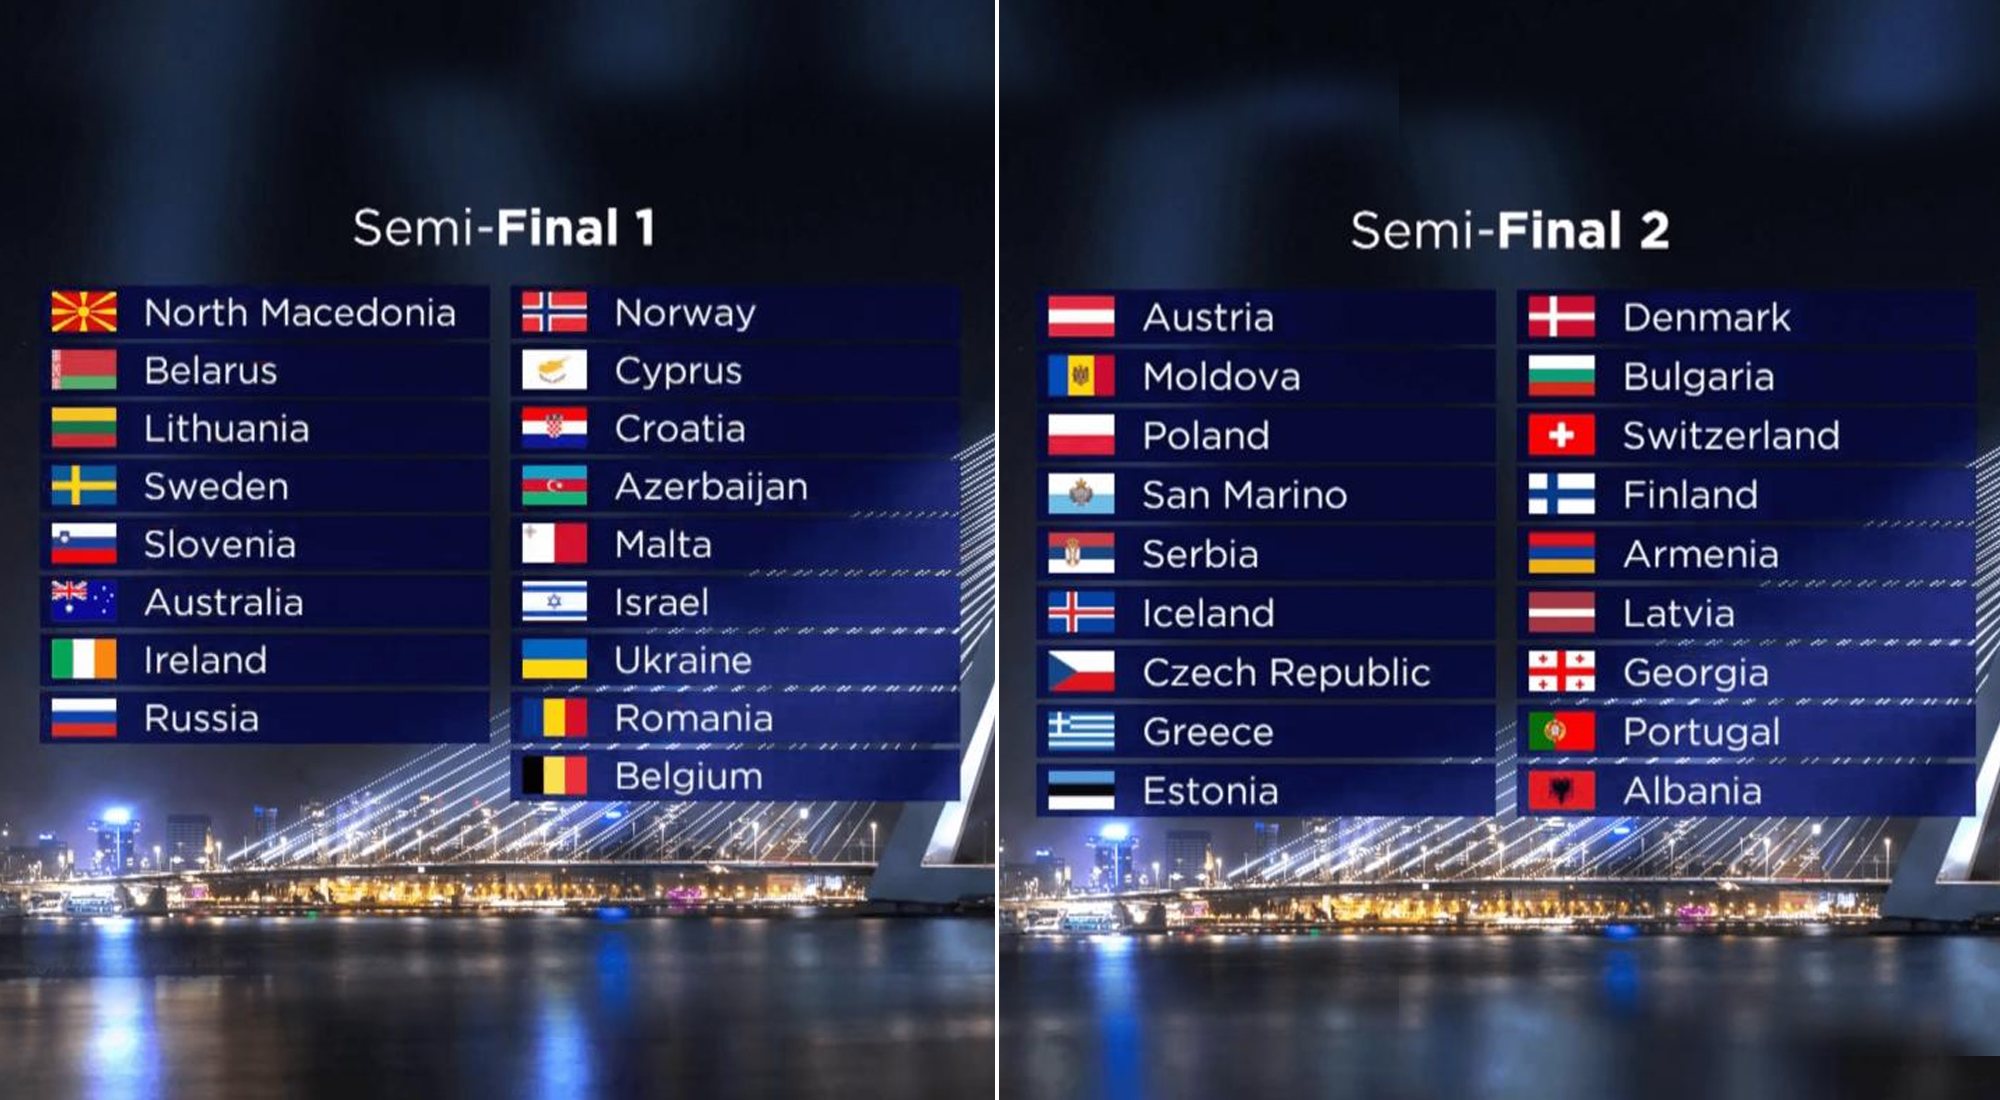 Las países repartidos en las semifinales de Eurovisión 2021, sin cambiar con respecto al orden establecido para 2020